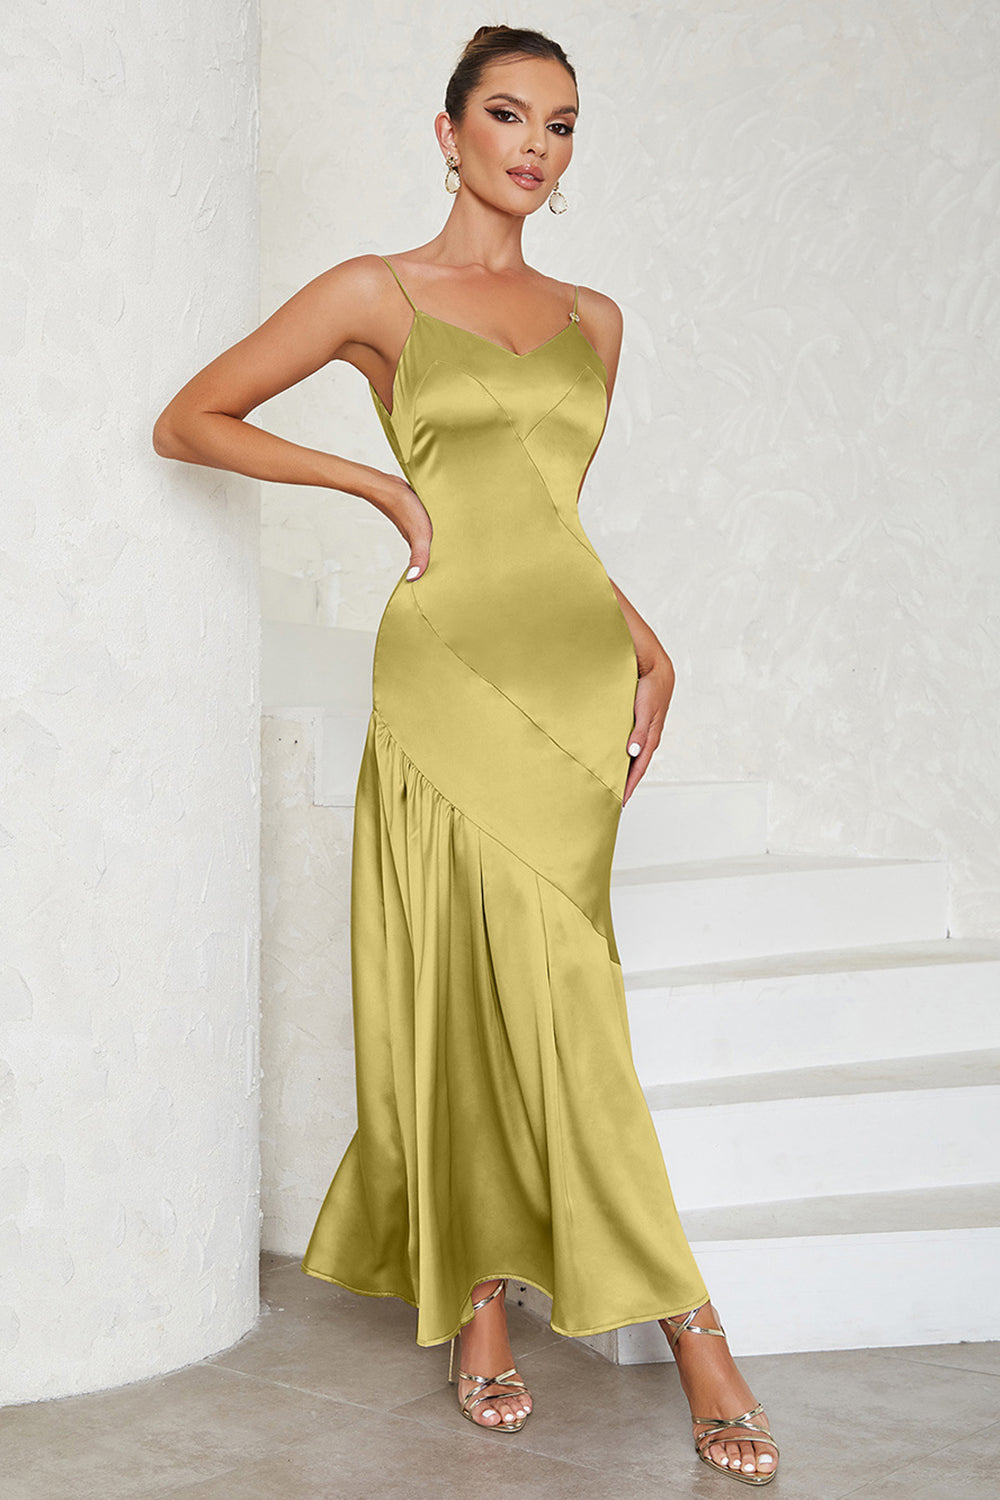 Green Satin Spaghetti Straps Sleeveless Cocktail Dress